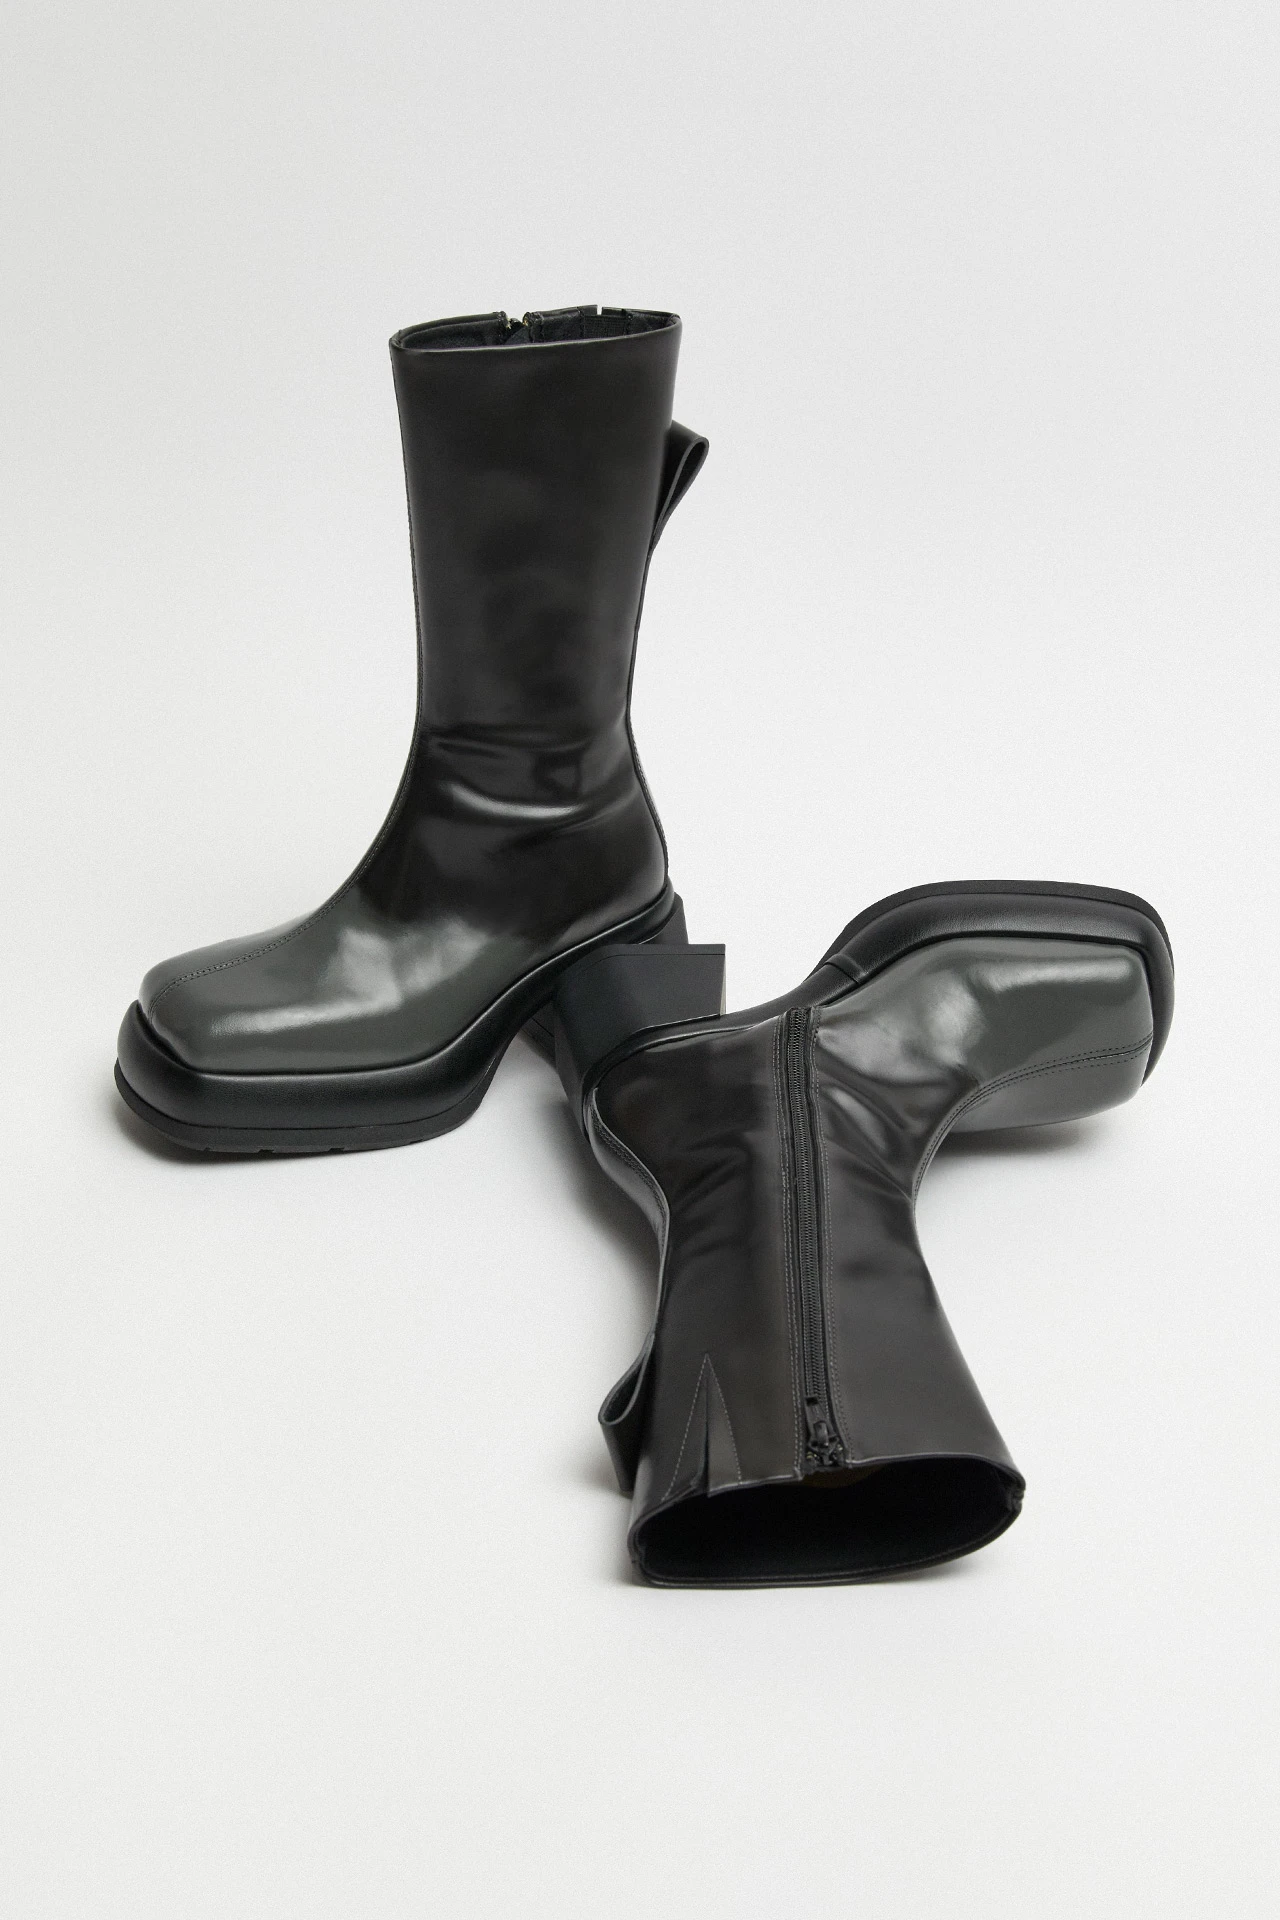 E8-cassia-grey-boots-02